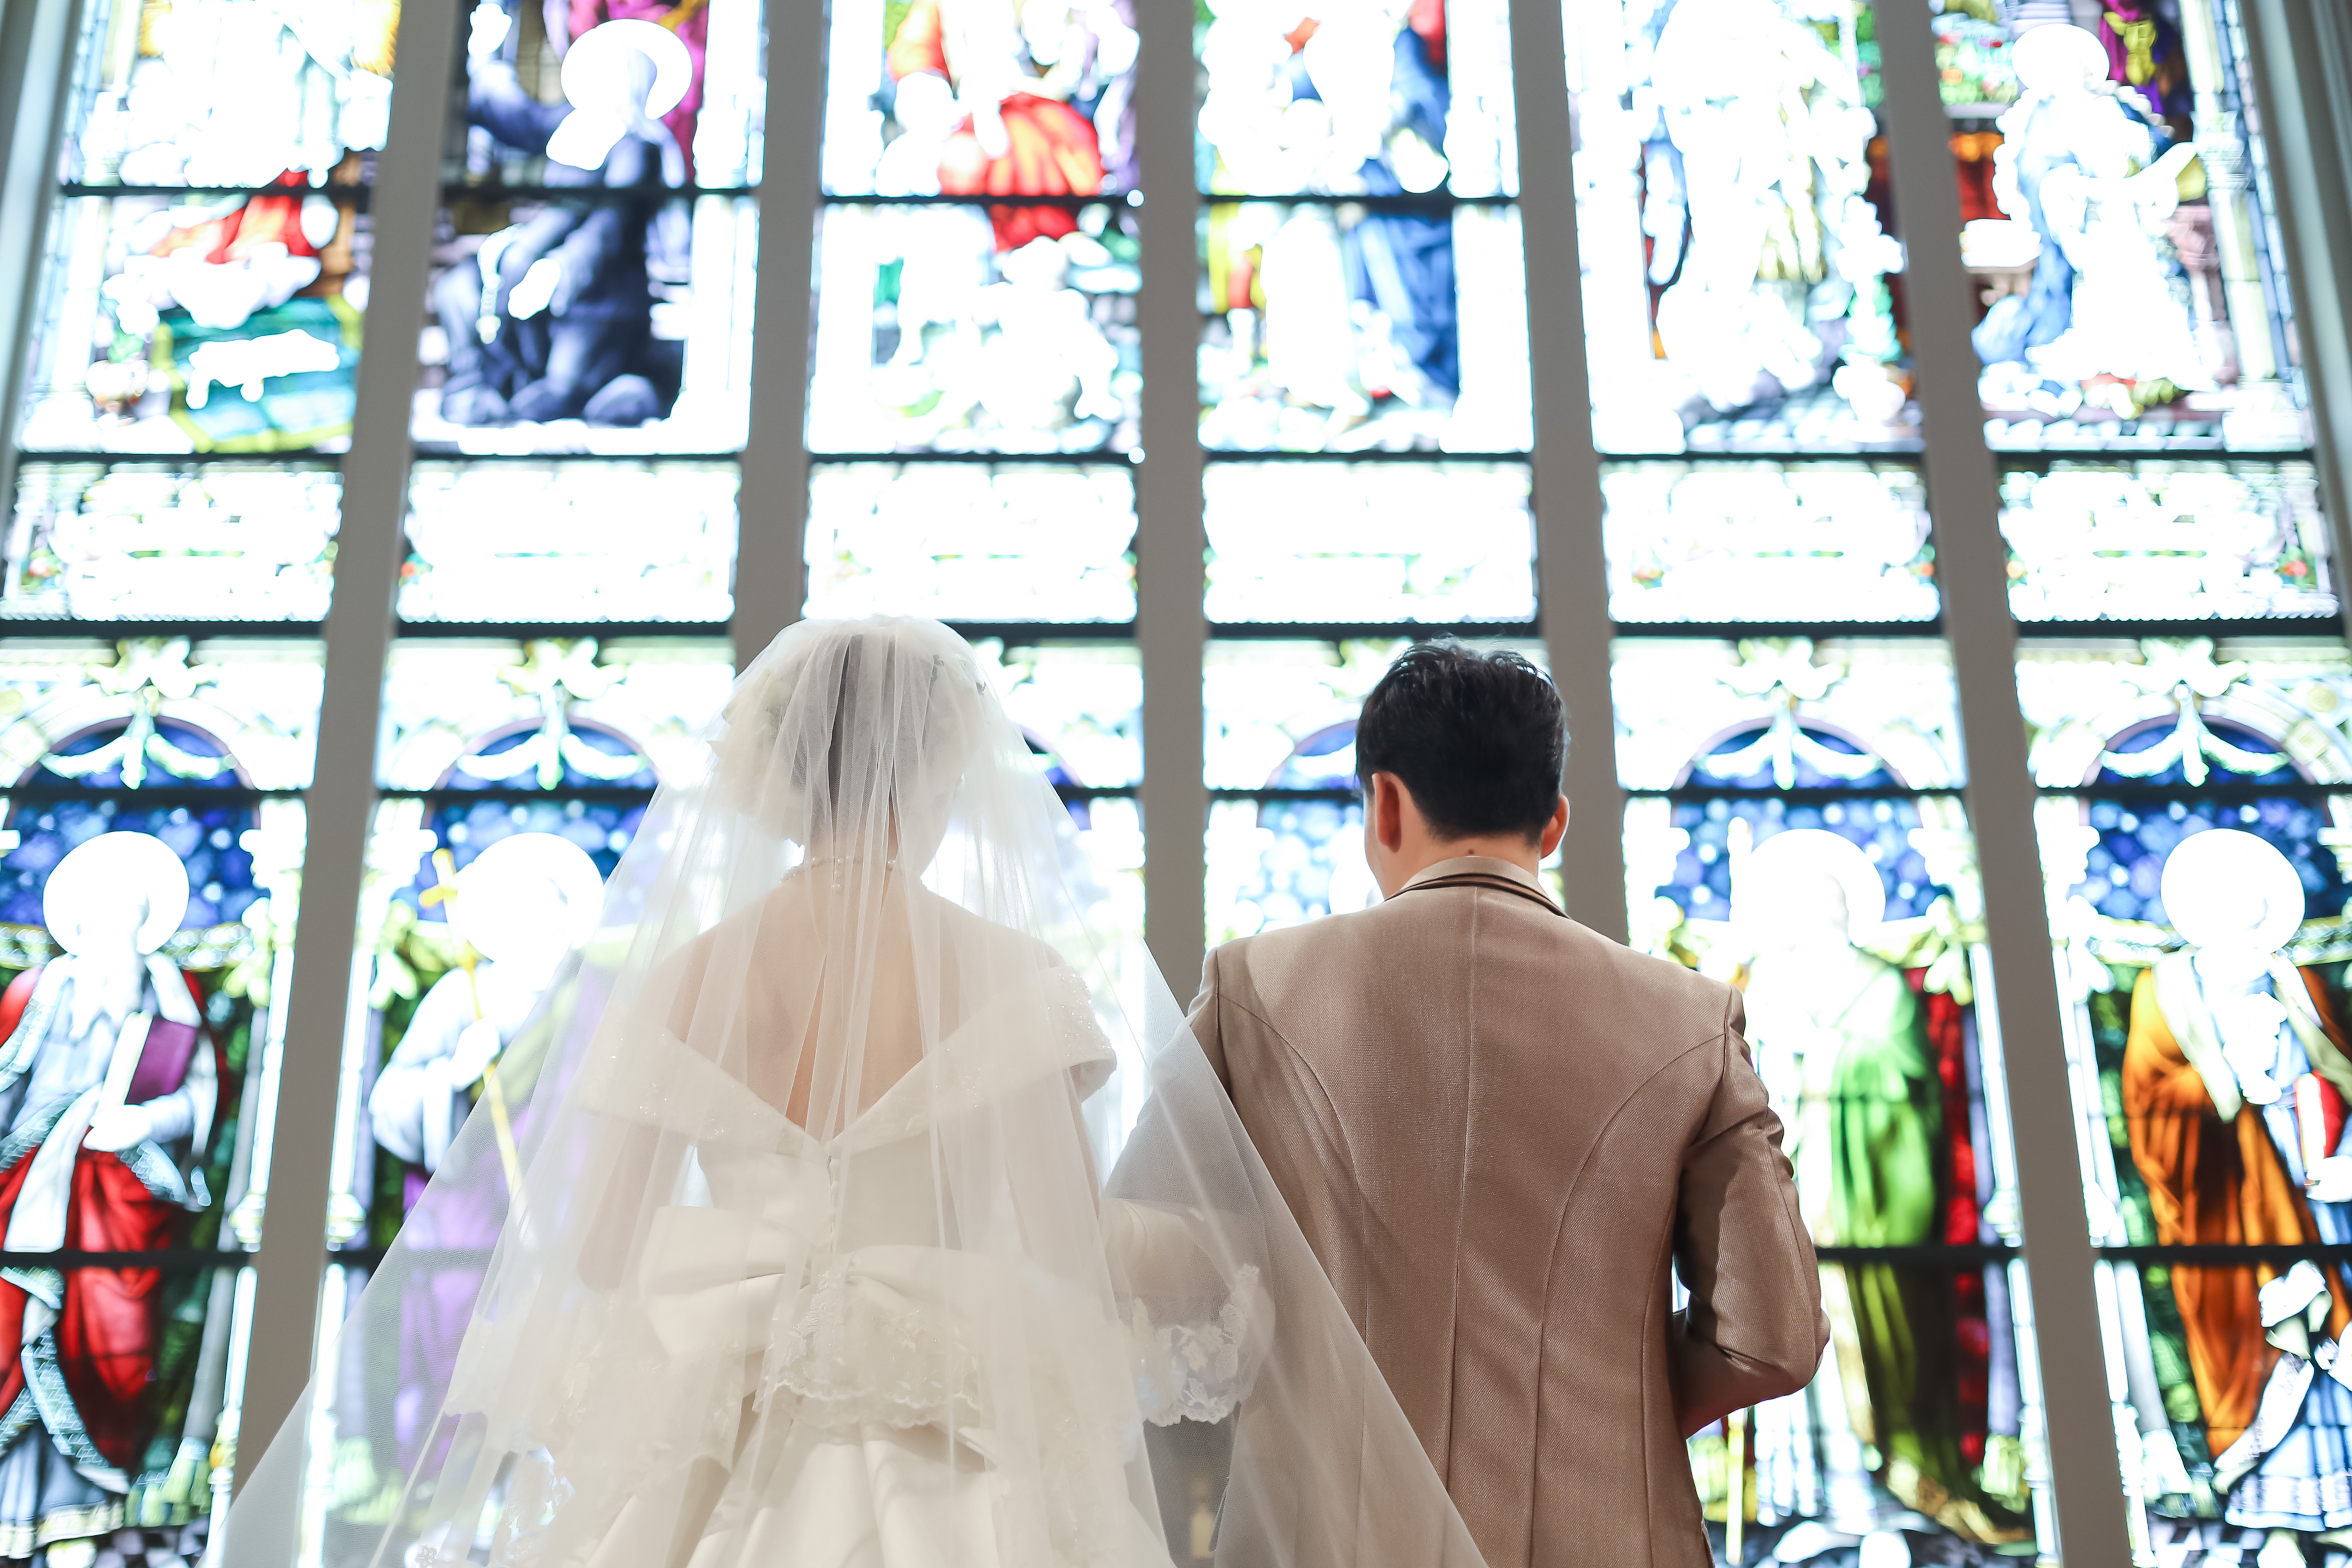 ぽっちゃり体型が気になる花嫁さん必見 ウエディングドレスの選び方 神戸旧居留地の結婚式場 神戸セントモルガン教会神戸セントモルガン教会